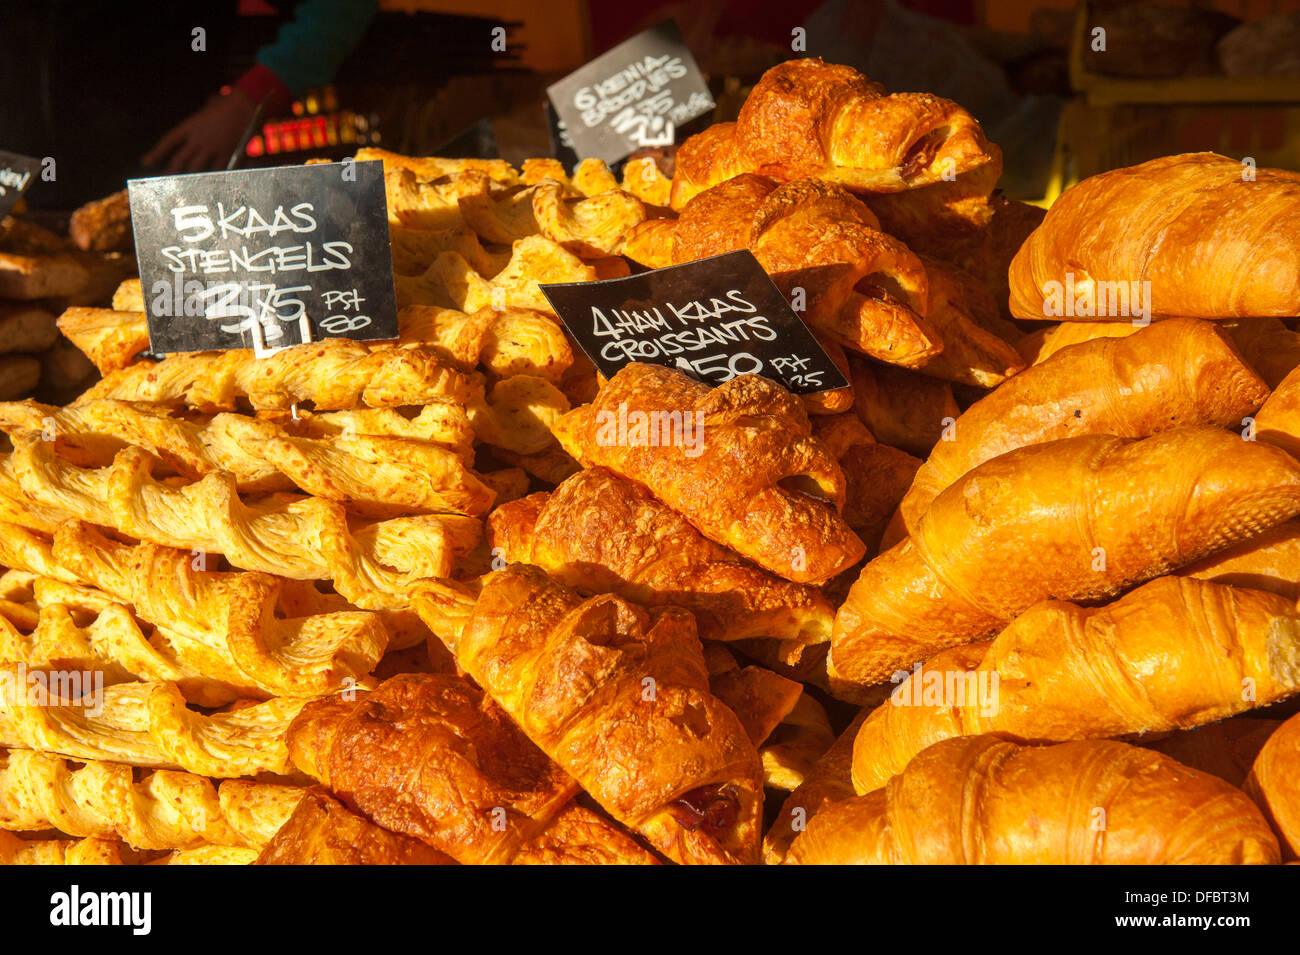 Les croissants et le néerlandais Kaas Stengels vendus sur le marché à Amersfoort, Pays-Bas Banque D'Images